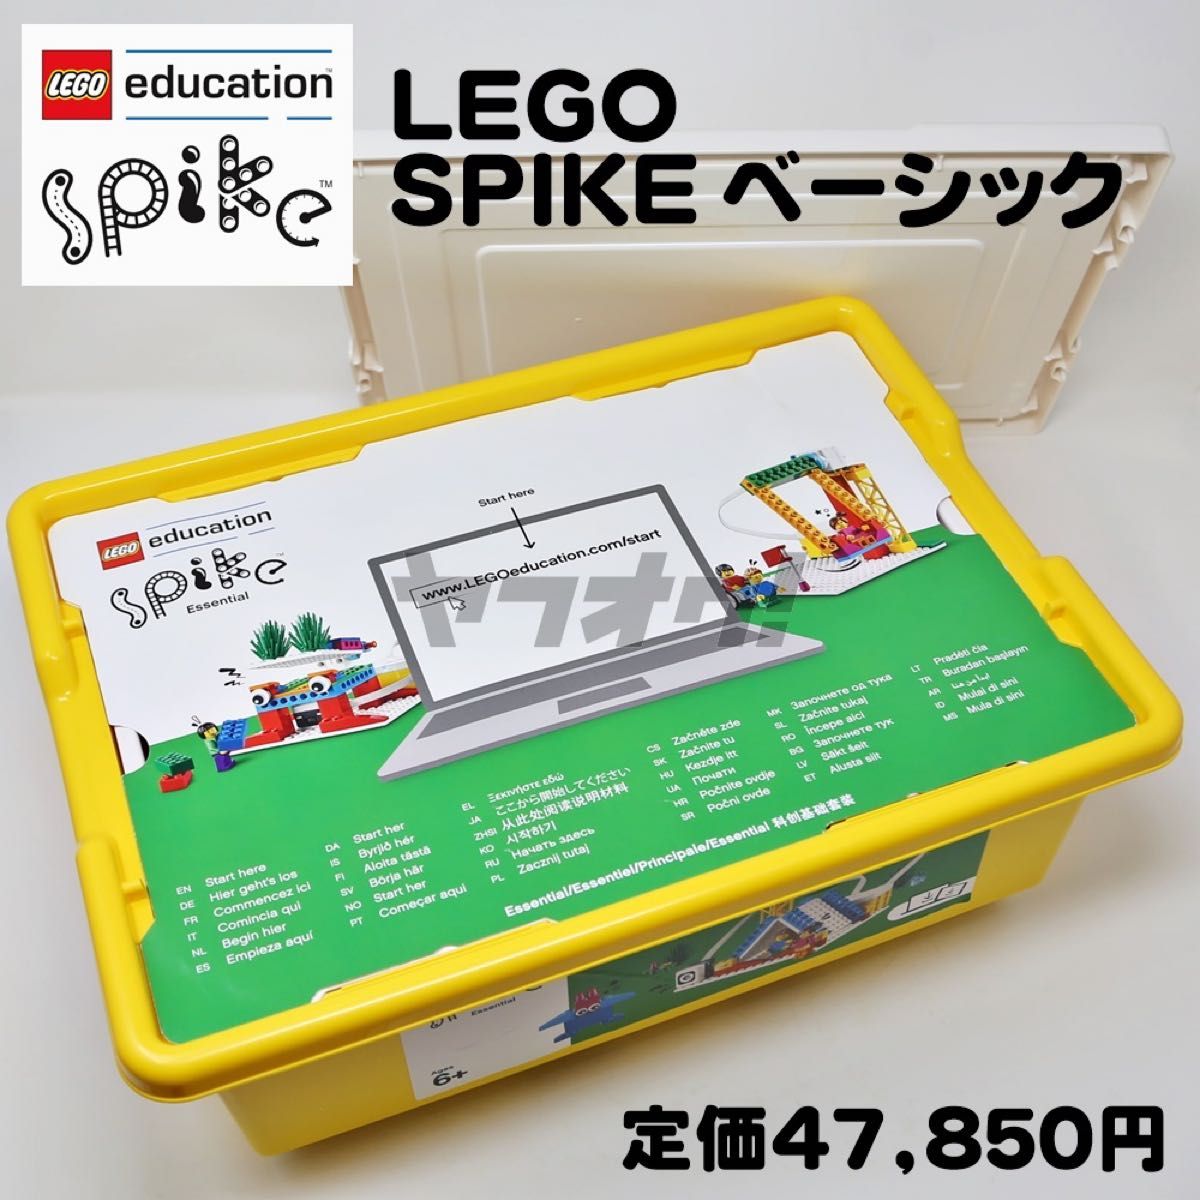 レゴ SPIKE ベーシックセット LEGOエデュケーション プログラミング